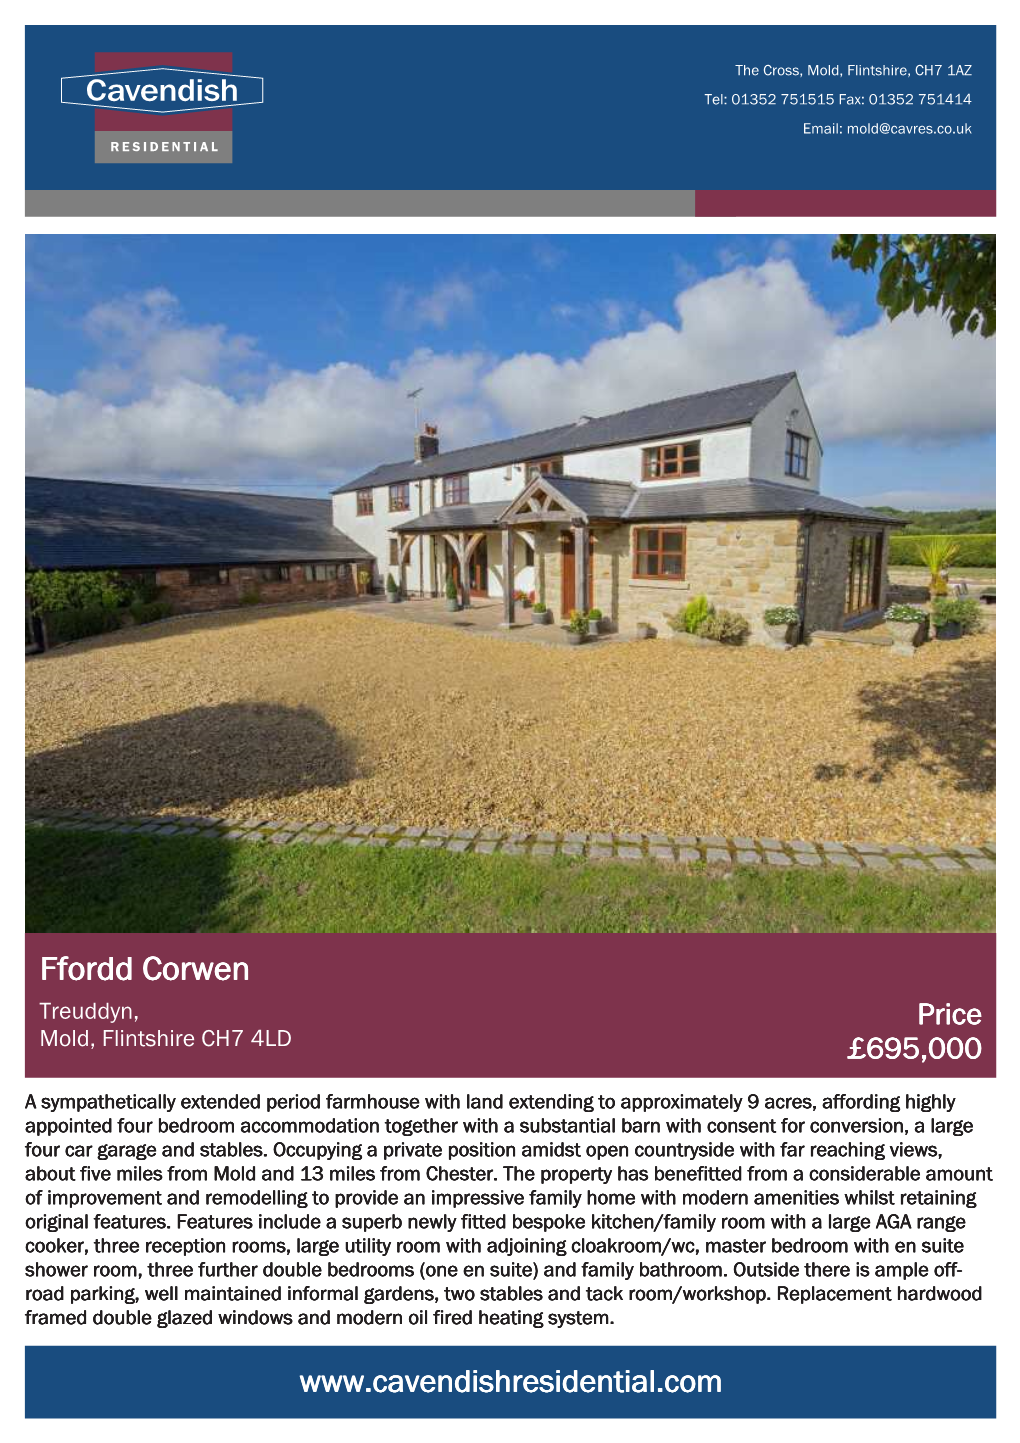 Ffordd Corwen Treuddyn, Price Mold, Flintshire CH7 4LD £695,000